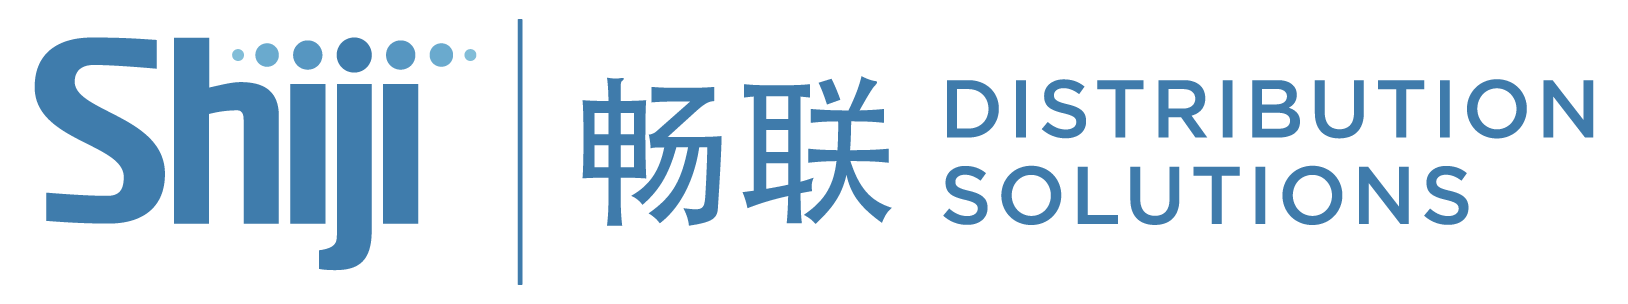 Shiji-Distribution-EN+CHINESE-large